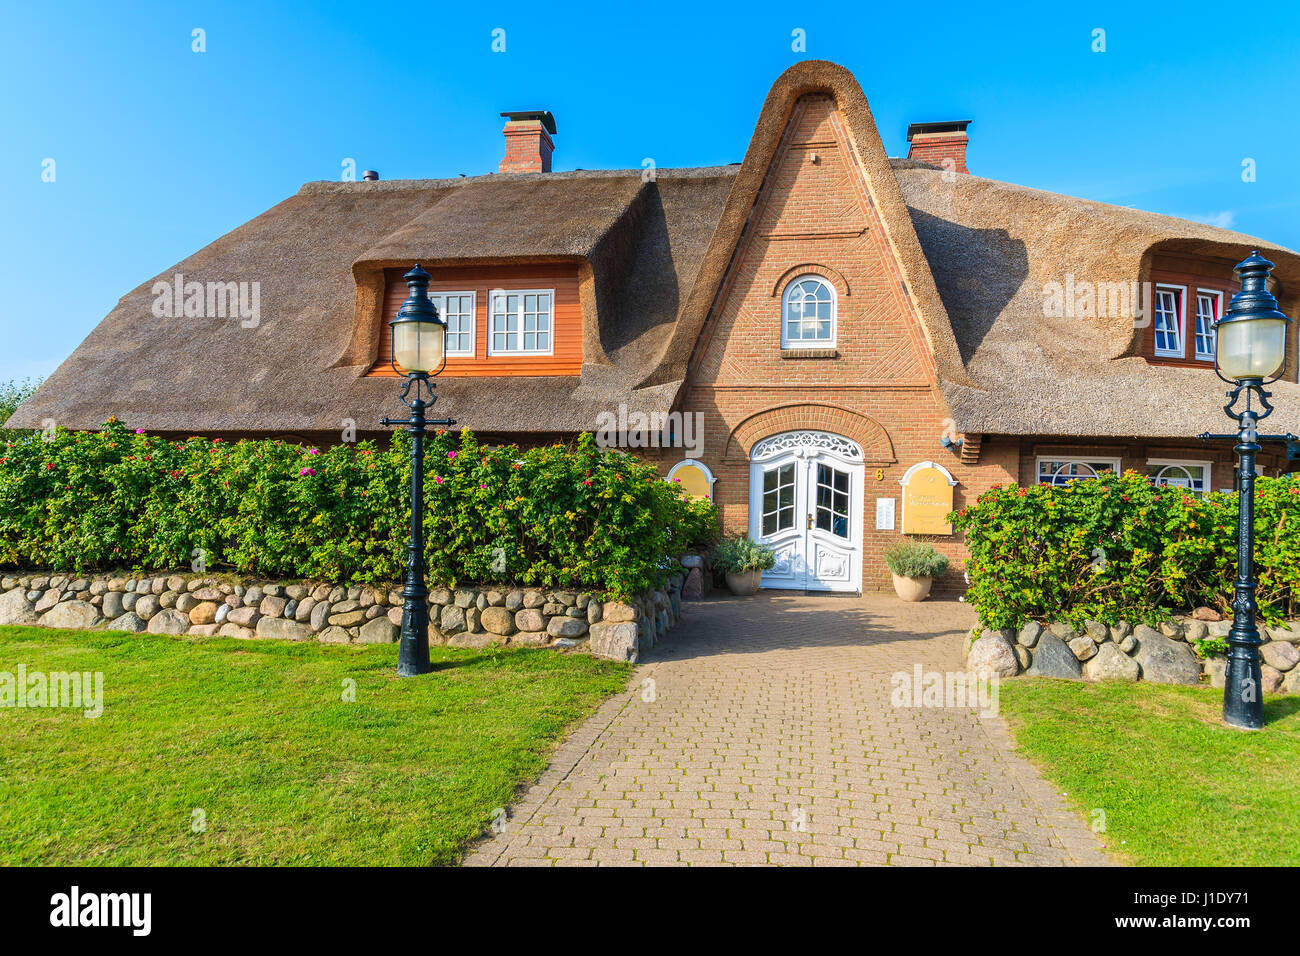 Insel SYLT, Deutschland - SEP 6, 2016: typisch friesischen Haus mit Reetdach auf der Insel Sylt in Kampen Dorf, Deutschland. Stockfoto